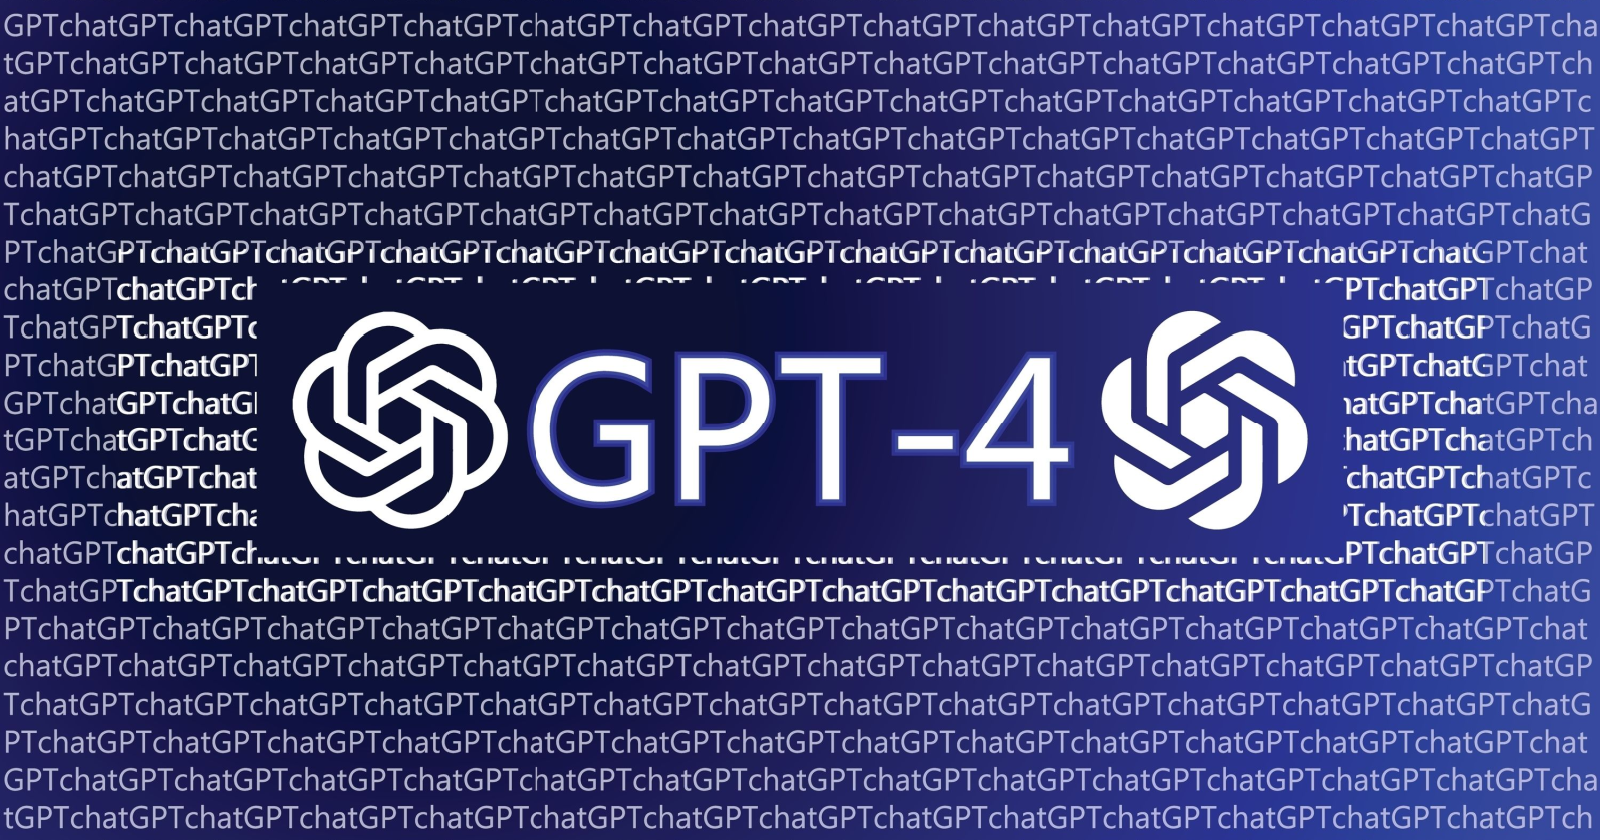 gpt4, gpt-4, gpt, gpt3, gpt-3